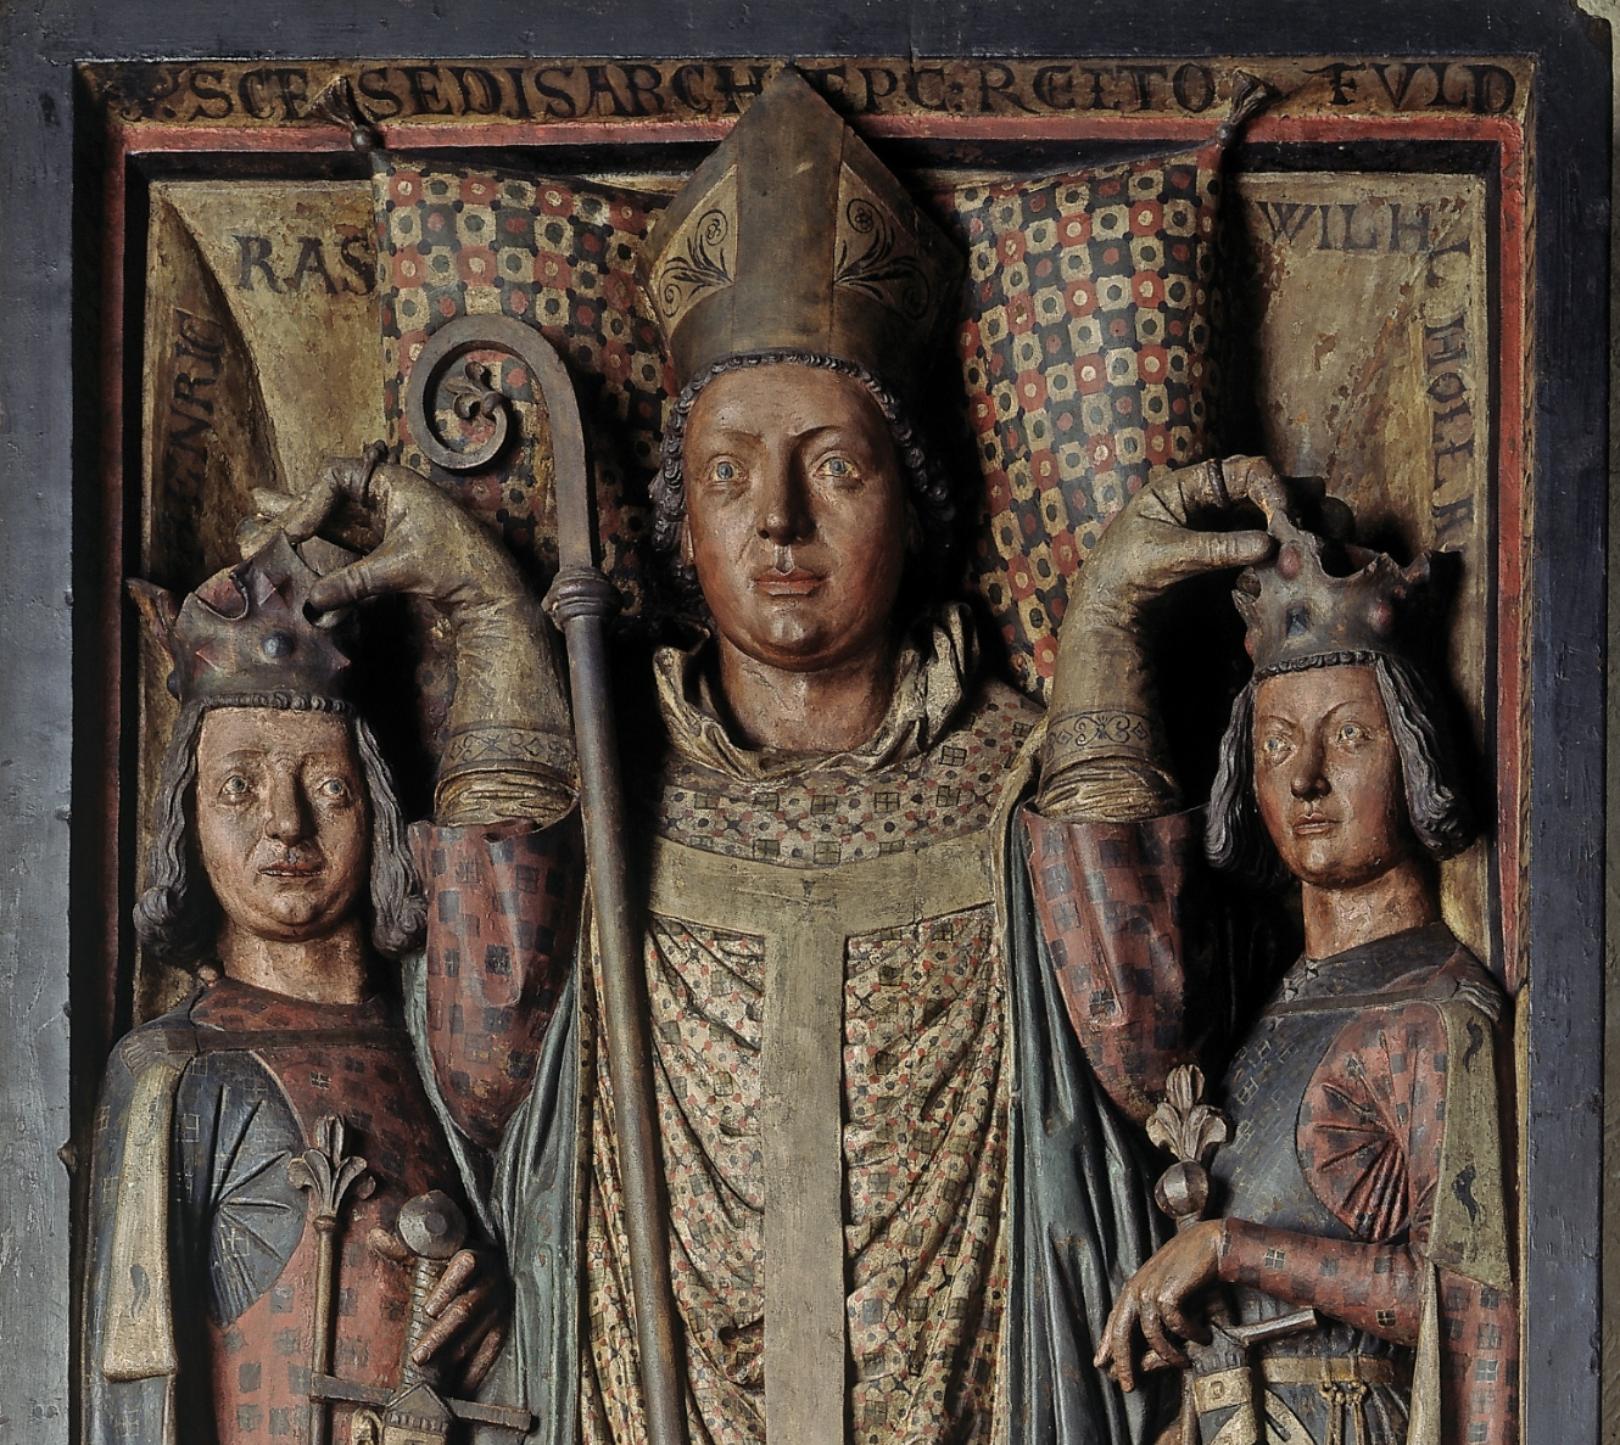 Siegfried III. von Eppstein, Grabdenkmal im Mainzer Dom, Ausschnitt (c) Bischöfliches Dom- und Diözesanmuseum Mainz (Foto: Bernd Schermuly)